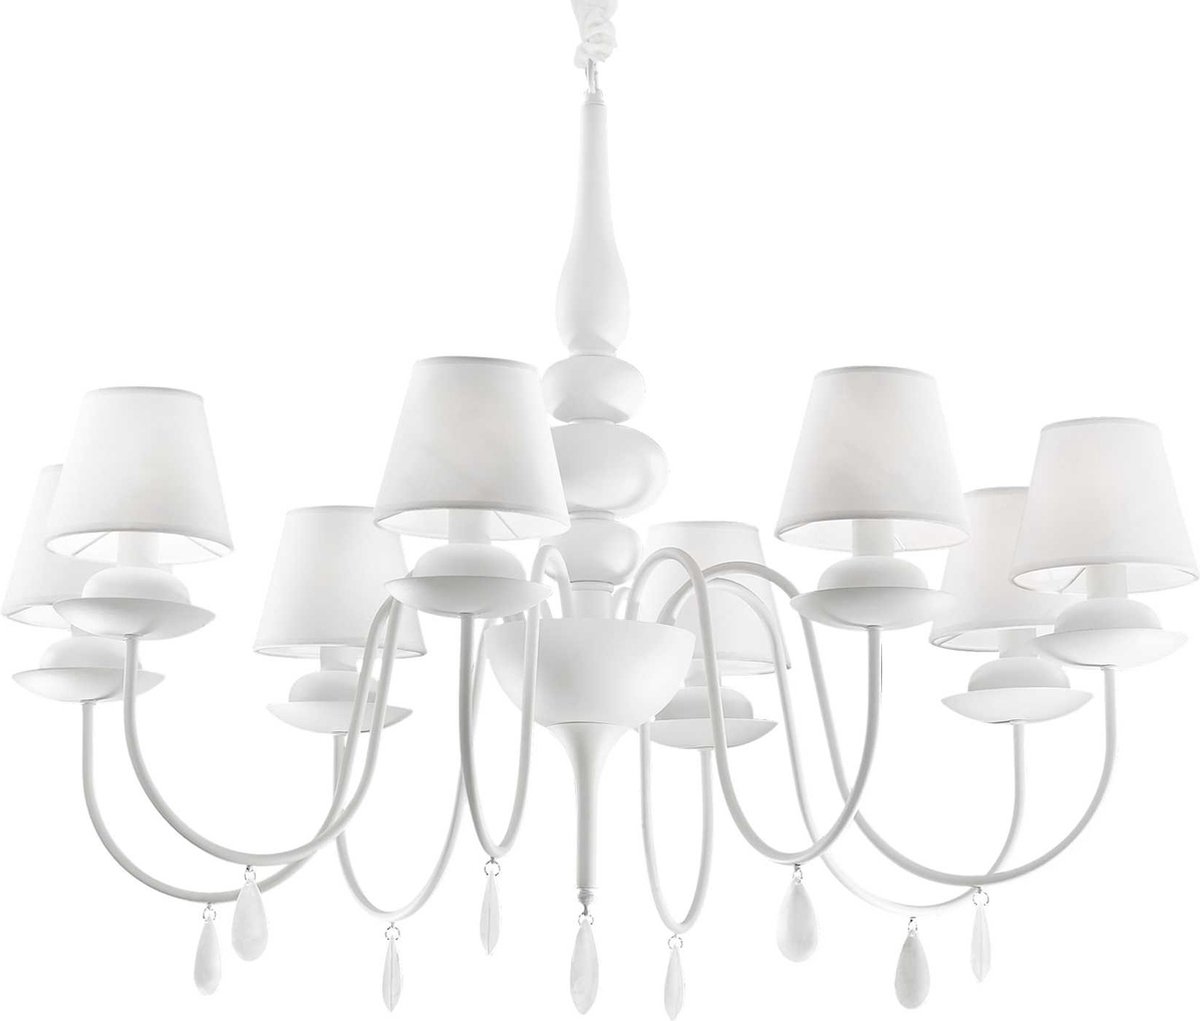 Ideal Your Lux - Hanglamp Modern - Metaal - E14 - Voor Binnen - Lamp - Lampen - Woonkamer - Eetkamer - Slaapkamer - Wit